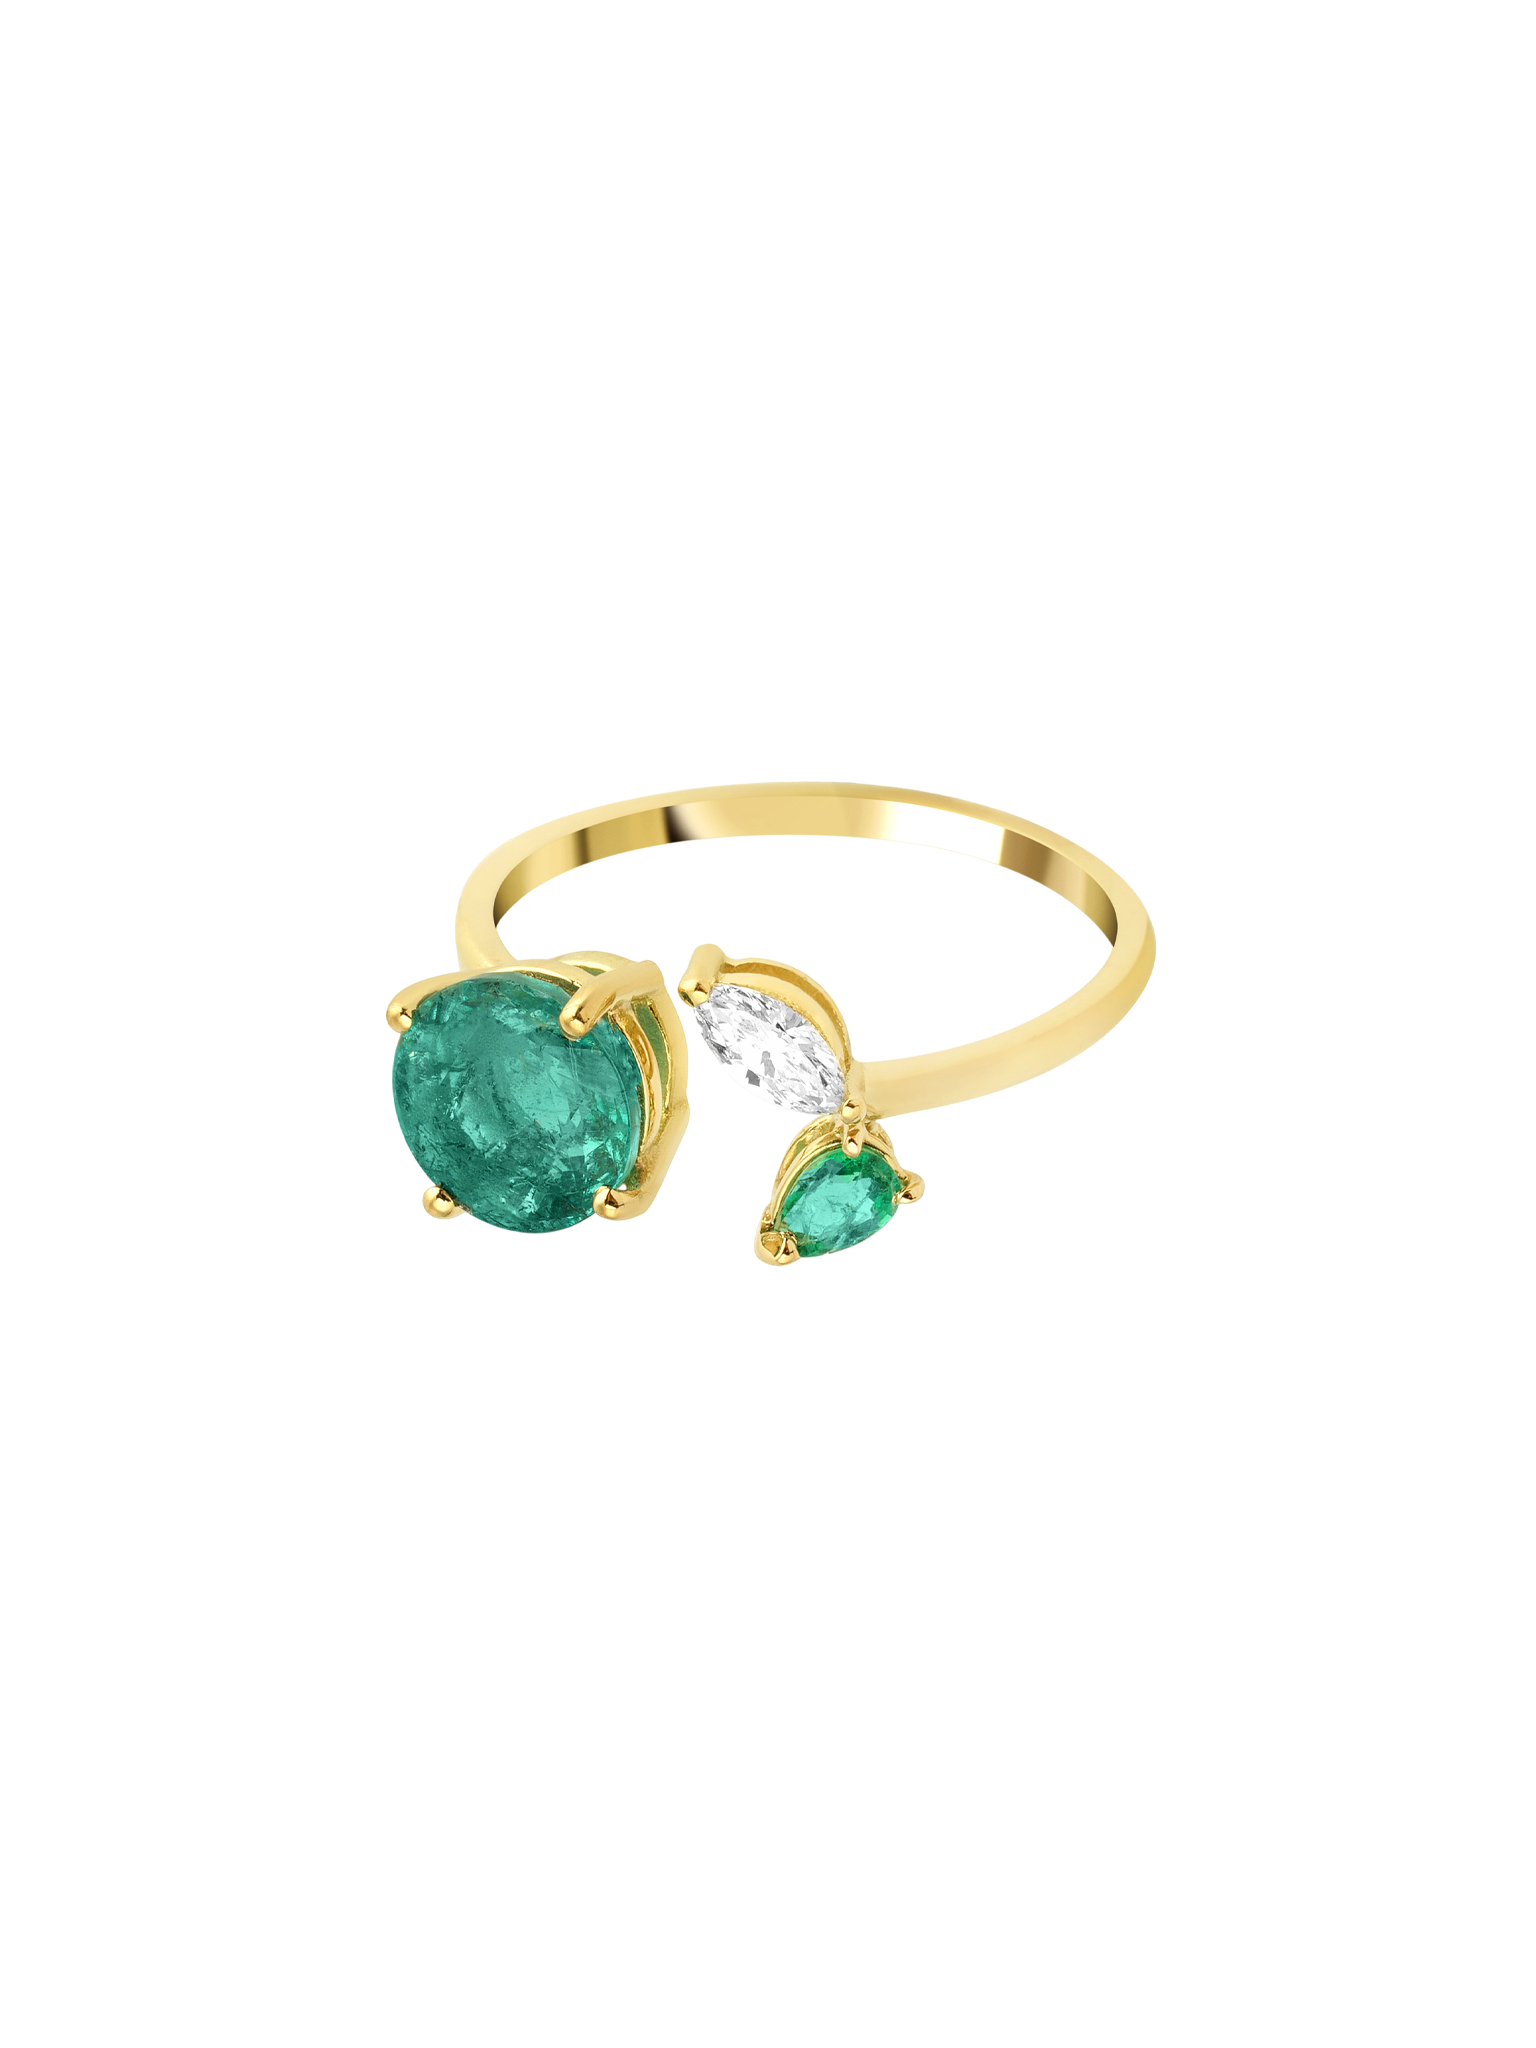 Artisia emerald leaf ring 